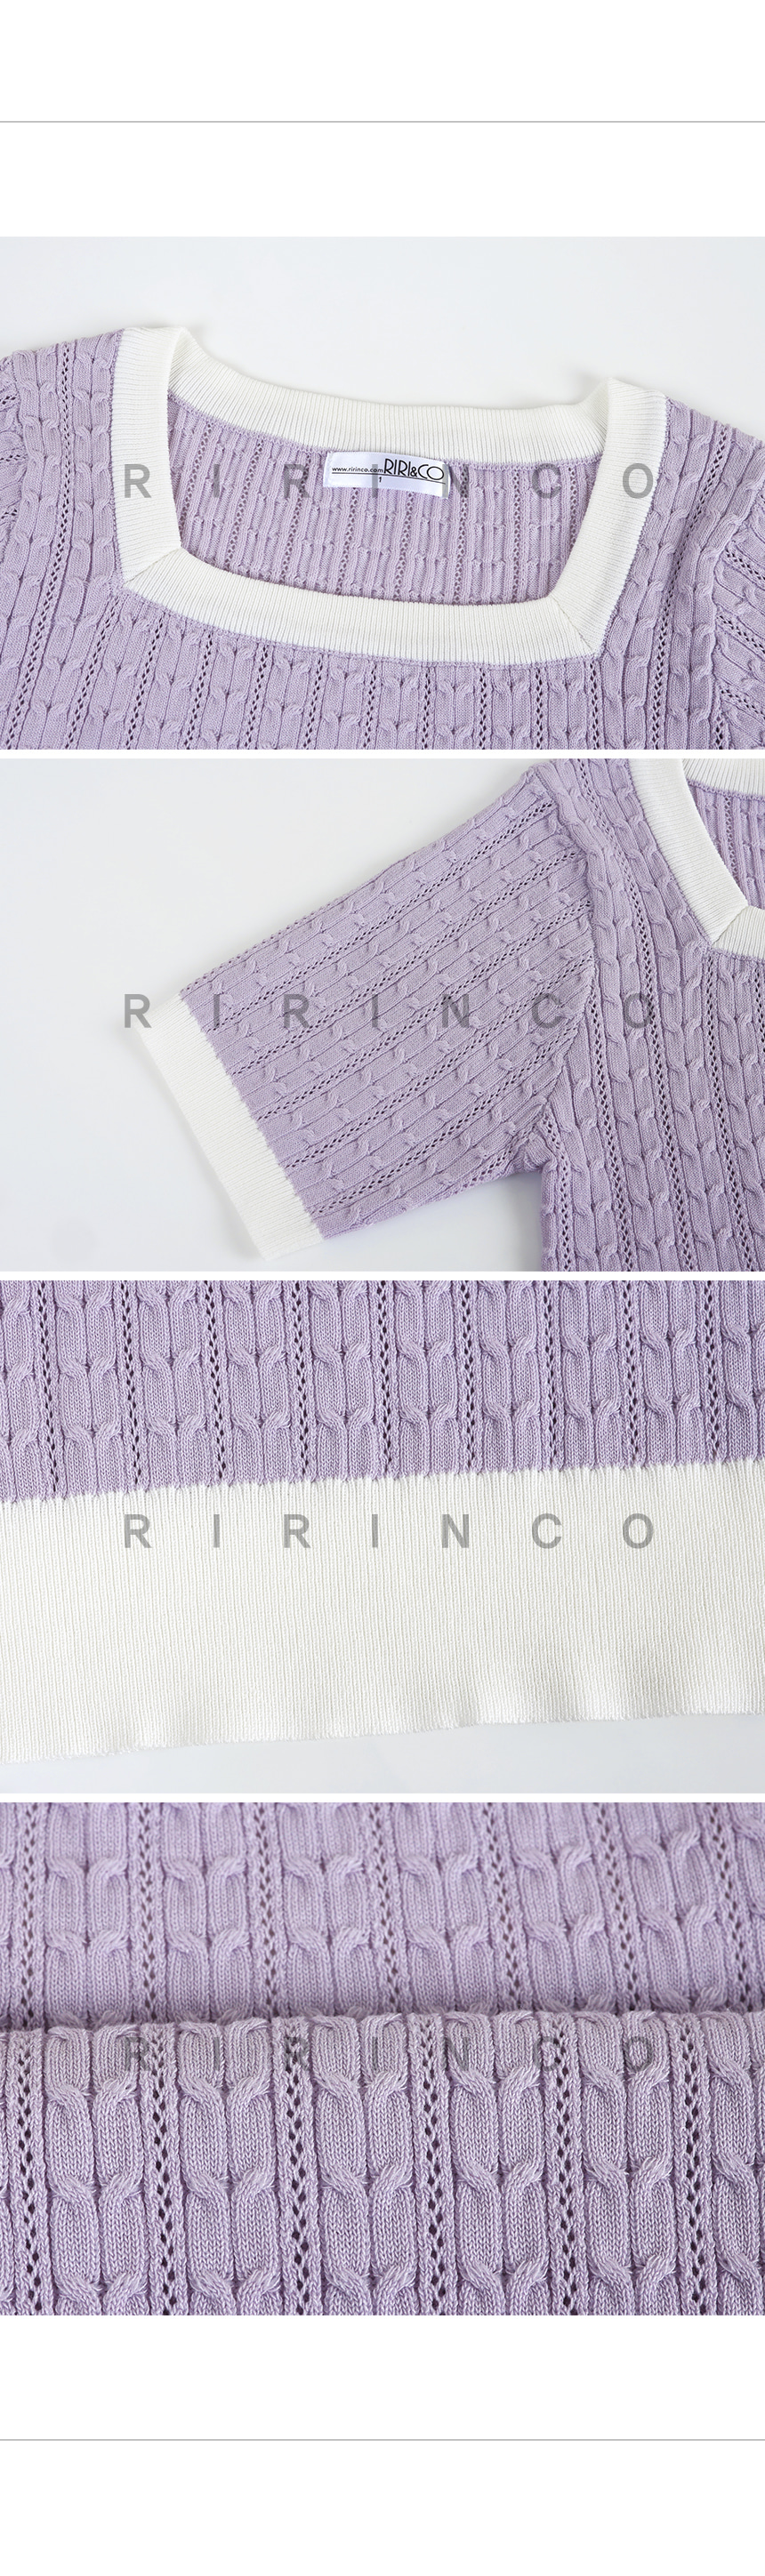 RIRINCO ケーブル編み配色セミクロップド丈半袖ニット